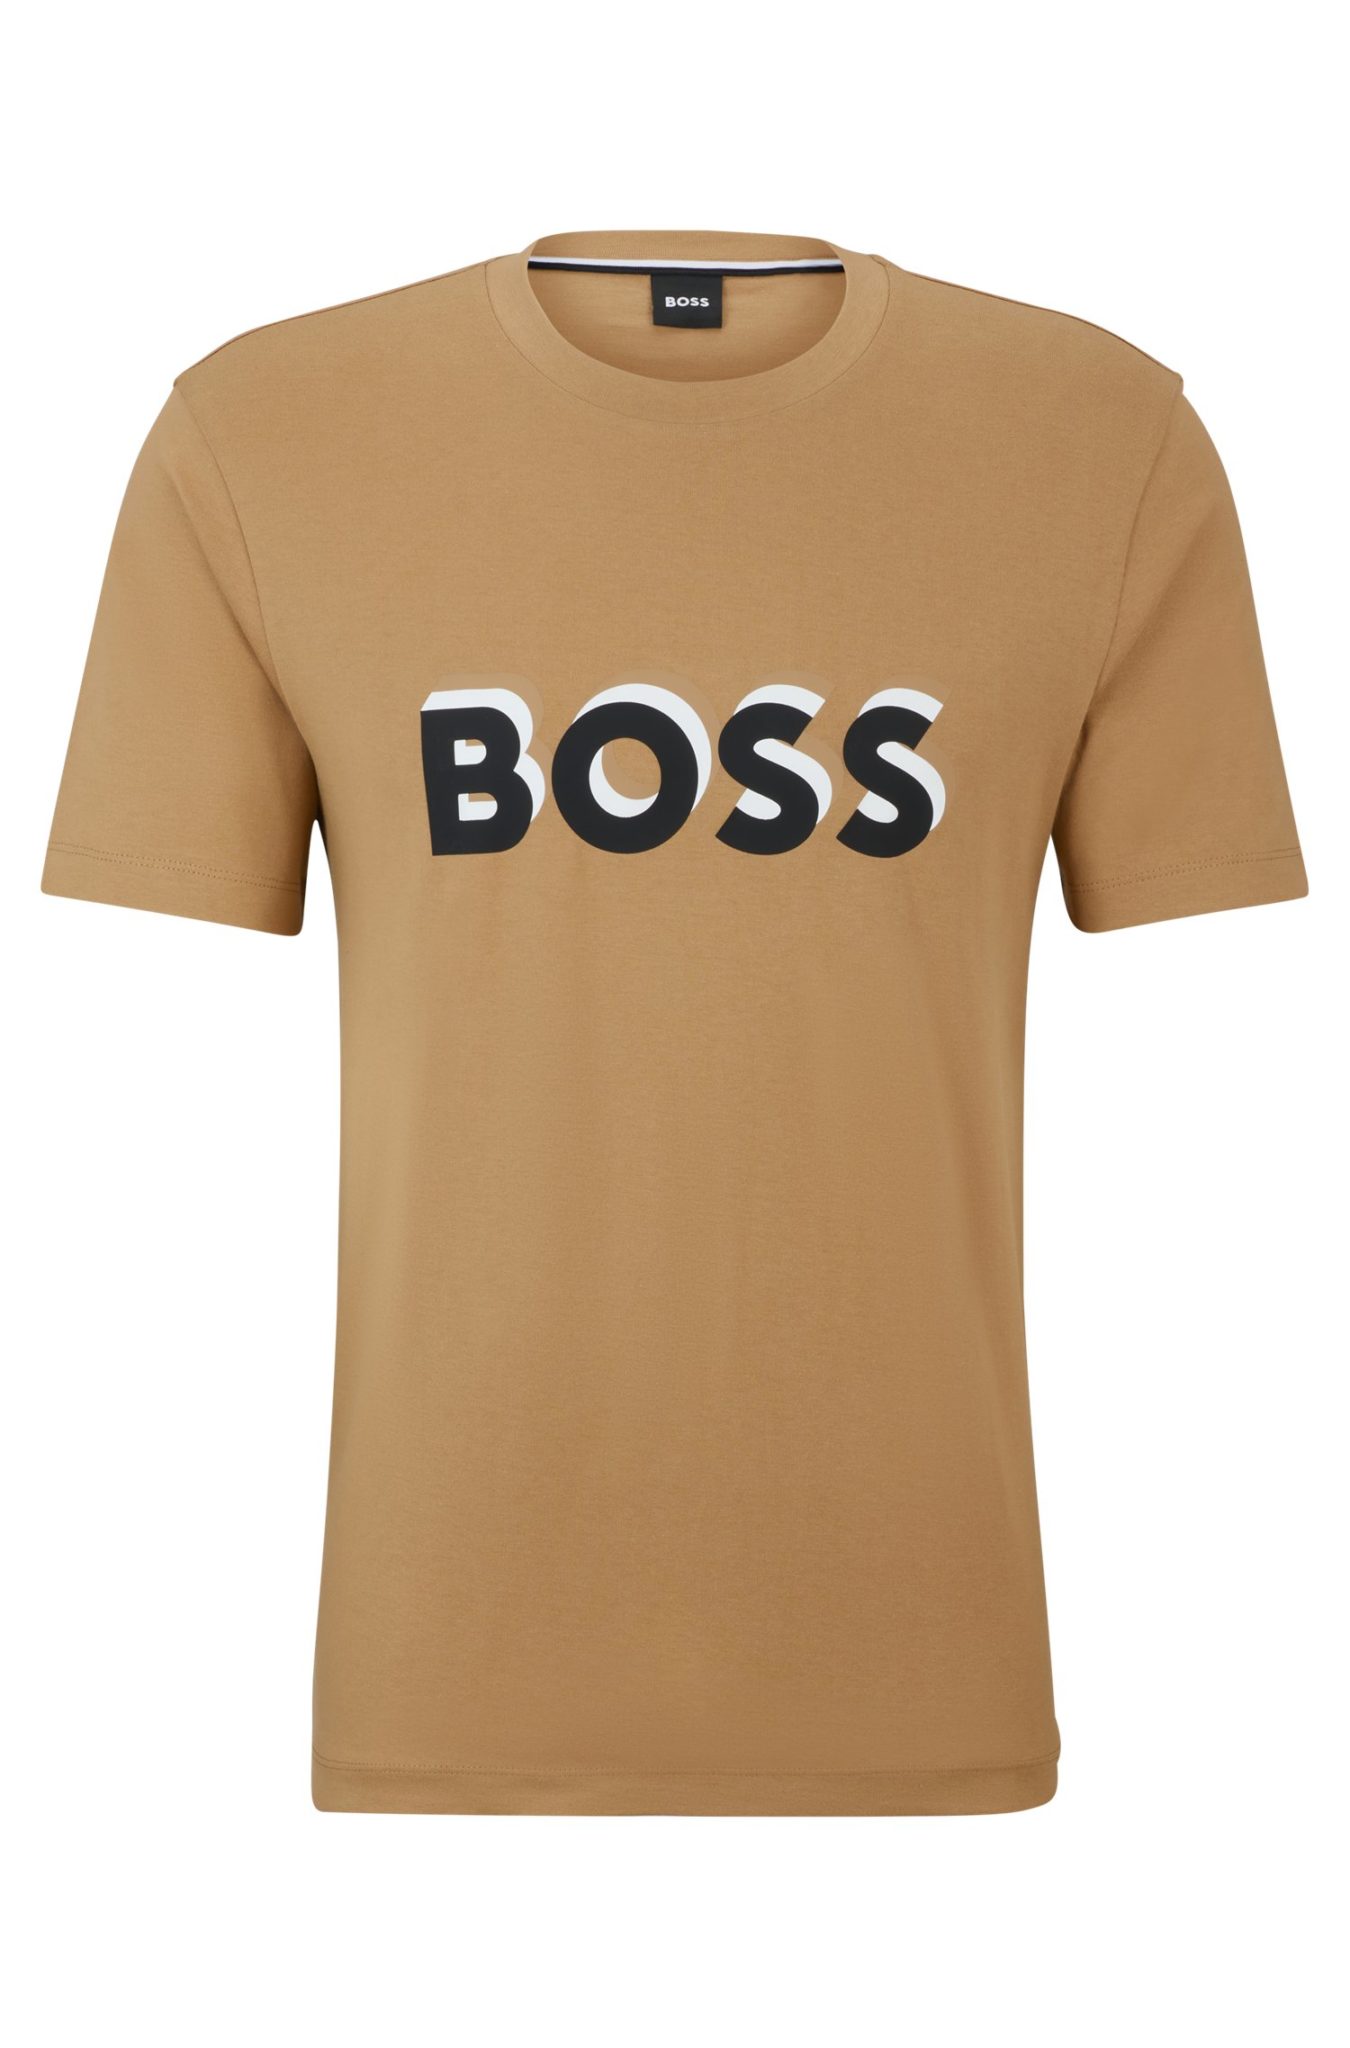 Hugo Boss T-shirt en jersey de coton avec logo aux couleurs emblématiques de la marque